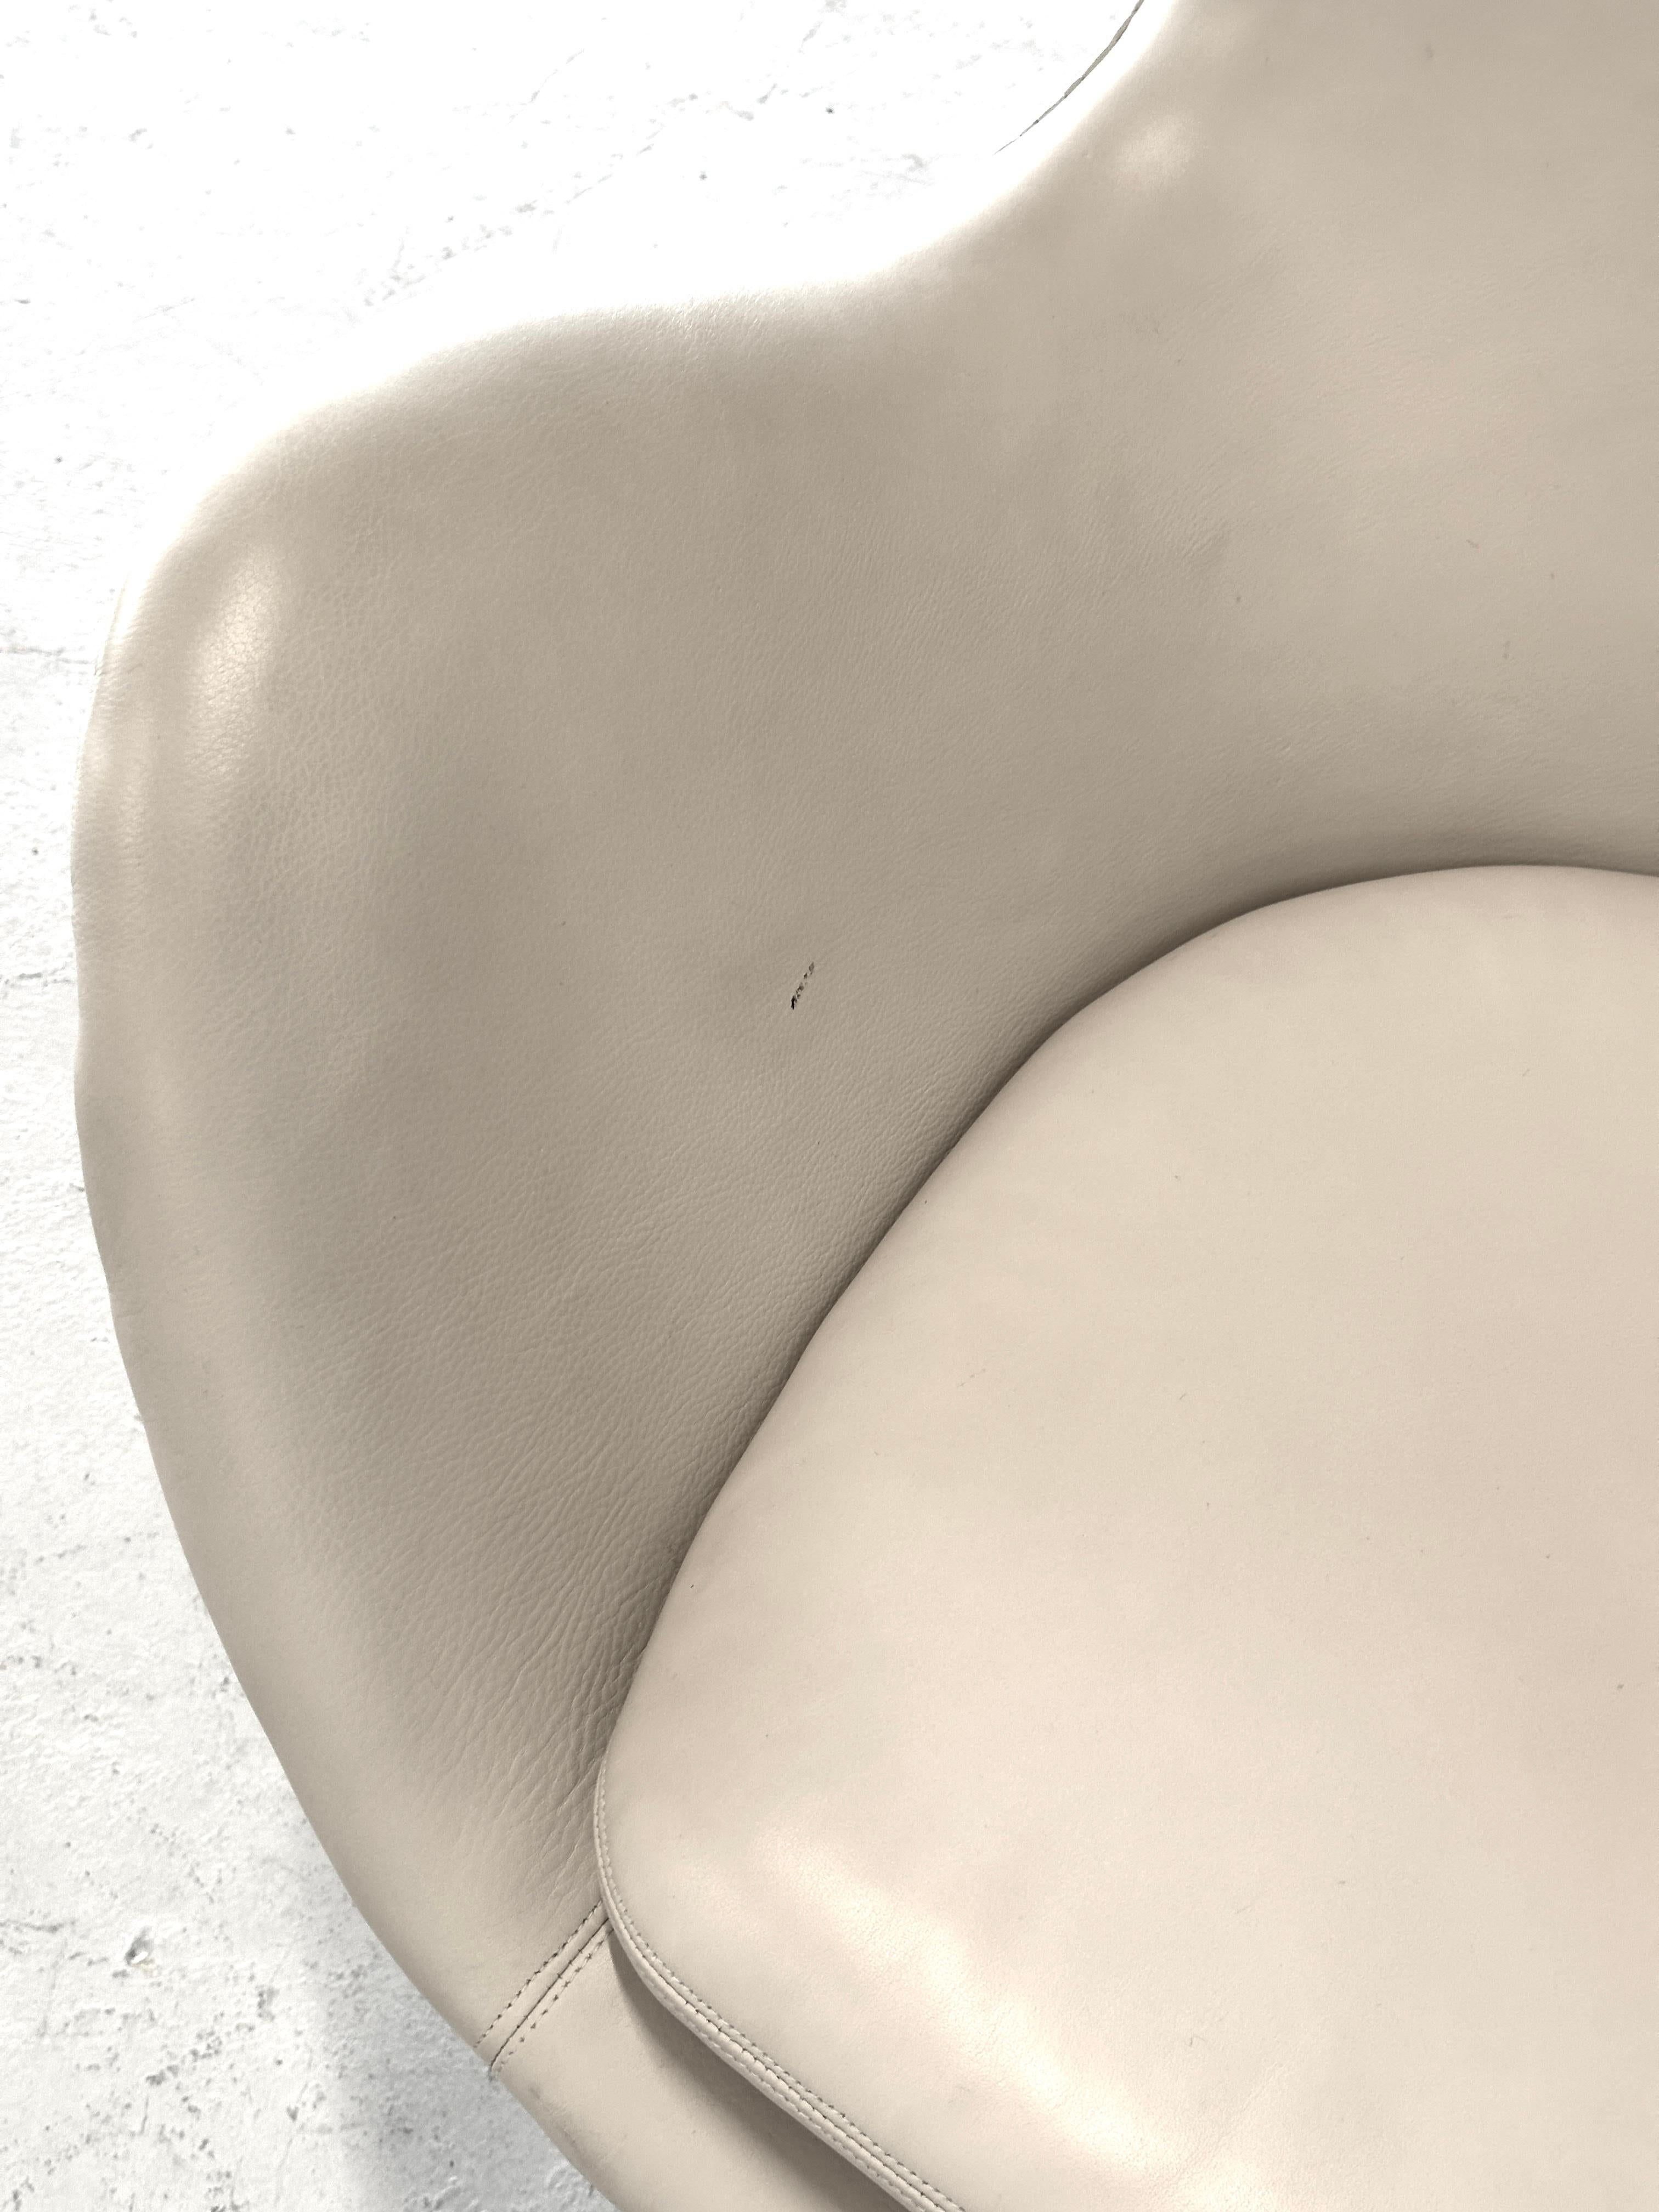 1966 Arne Jacobsen for Fritz Hansen Egg Chair in Leather For Sale 2